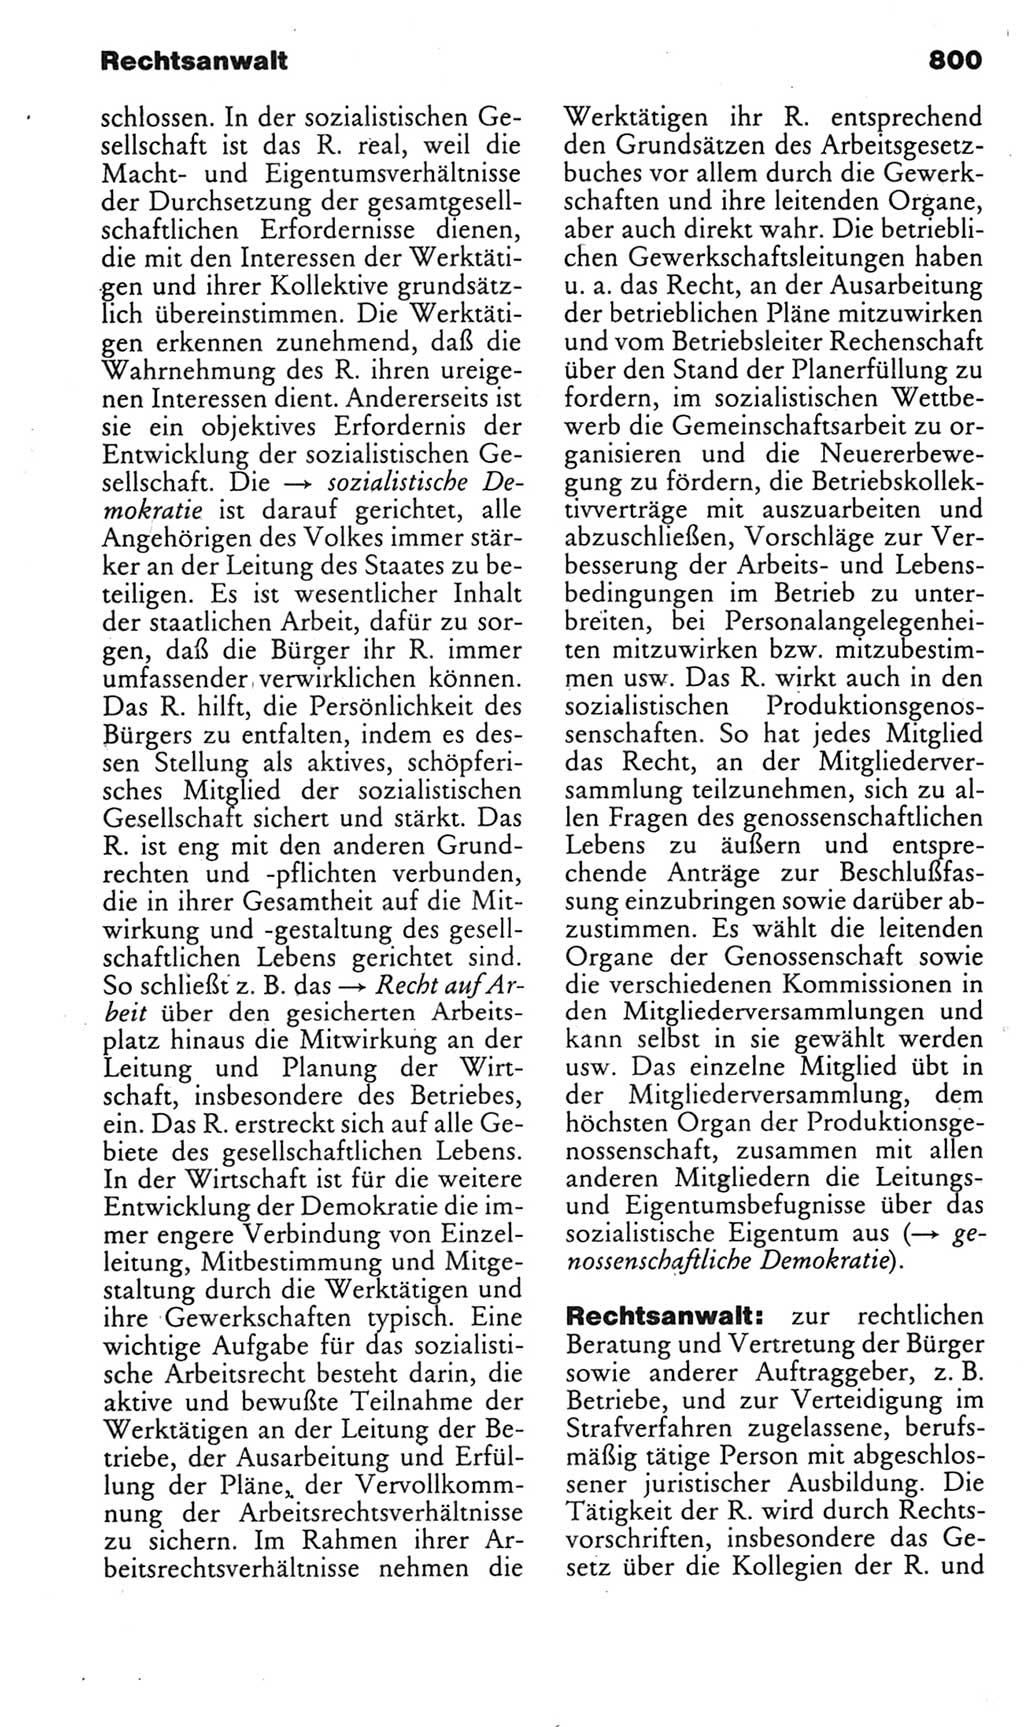 Kleines politisches Wörterbuch [Deutsche Demokratische Republik (DDR)] 1985, Seite 800 (Kl. pol. Wb. DDR 1985, S. 800)